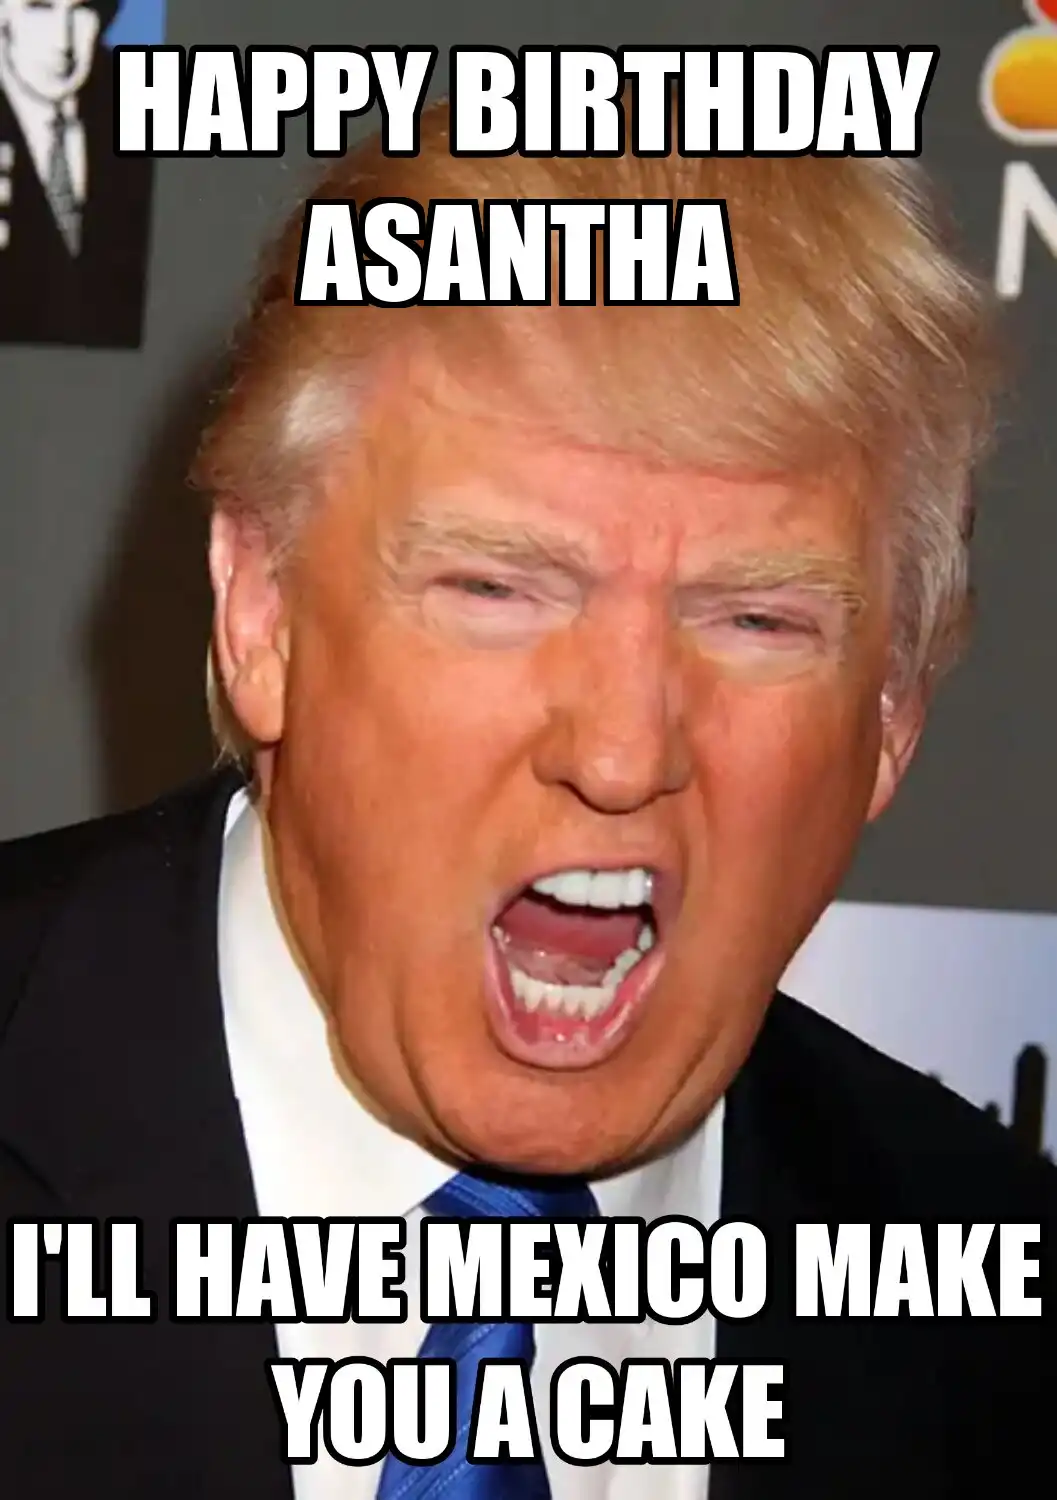 Happy Birthday Asantha Mexico Make You A Cake Meme